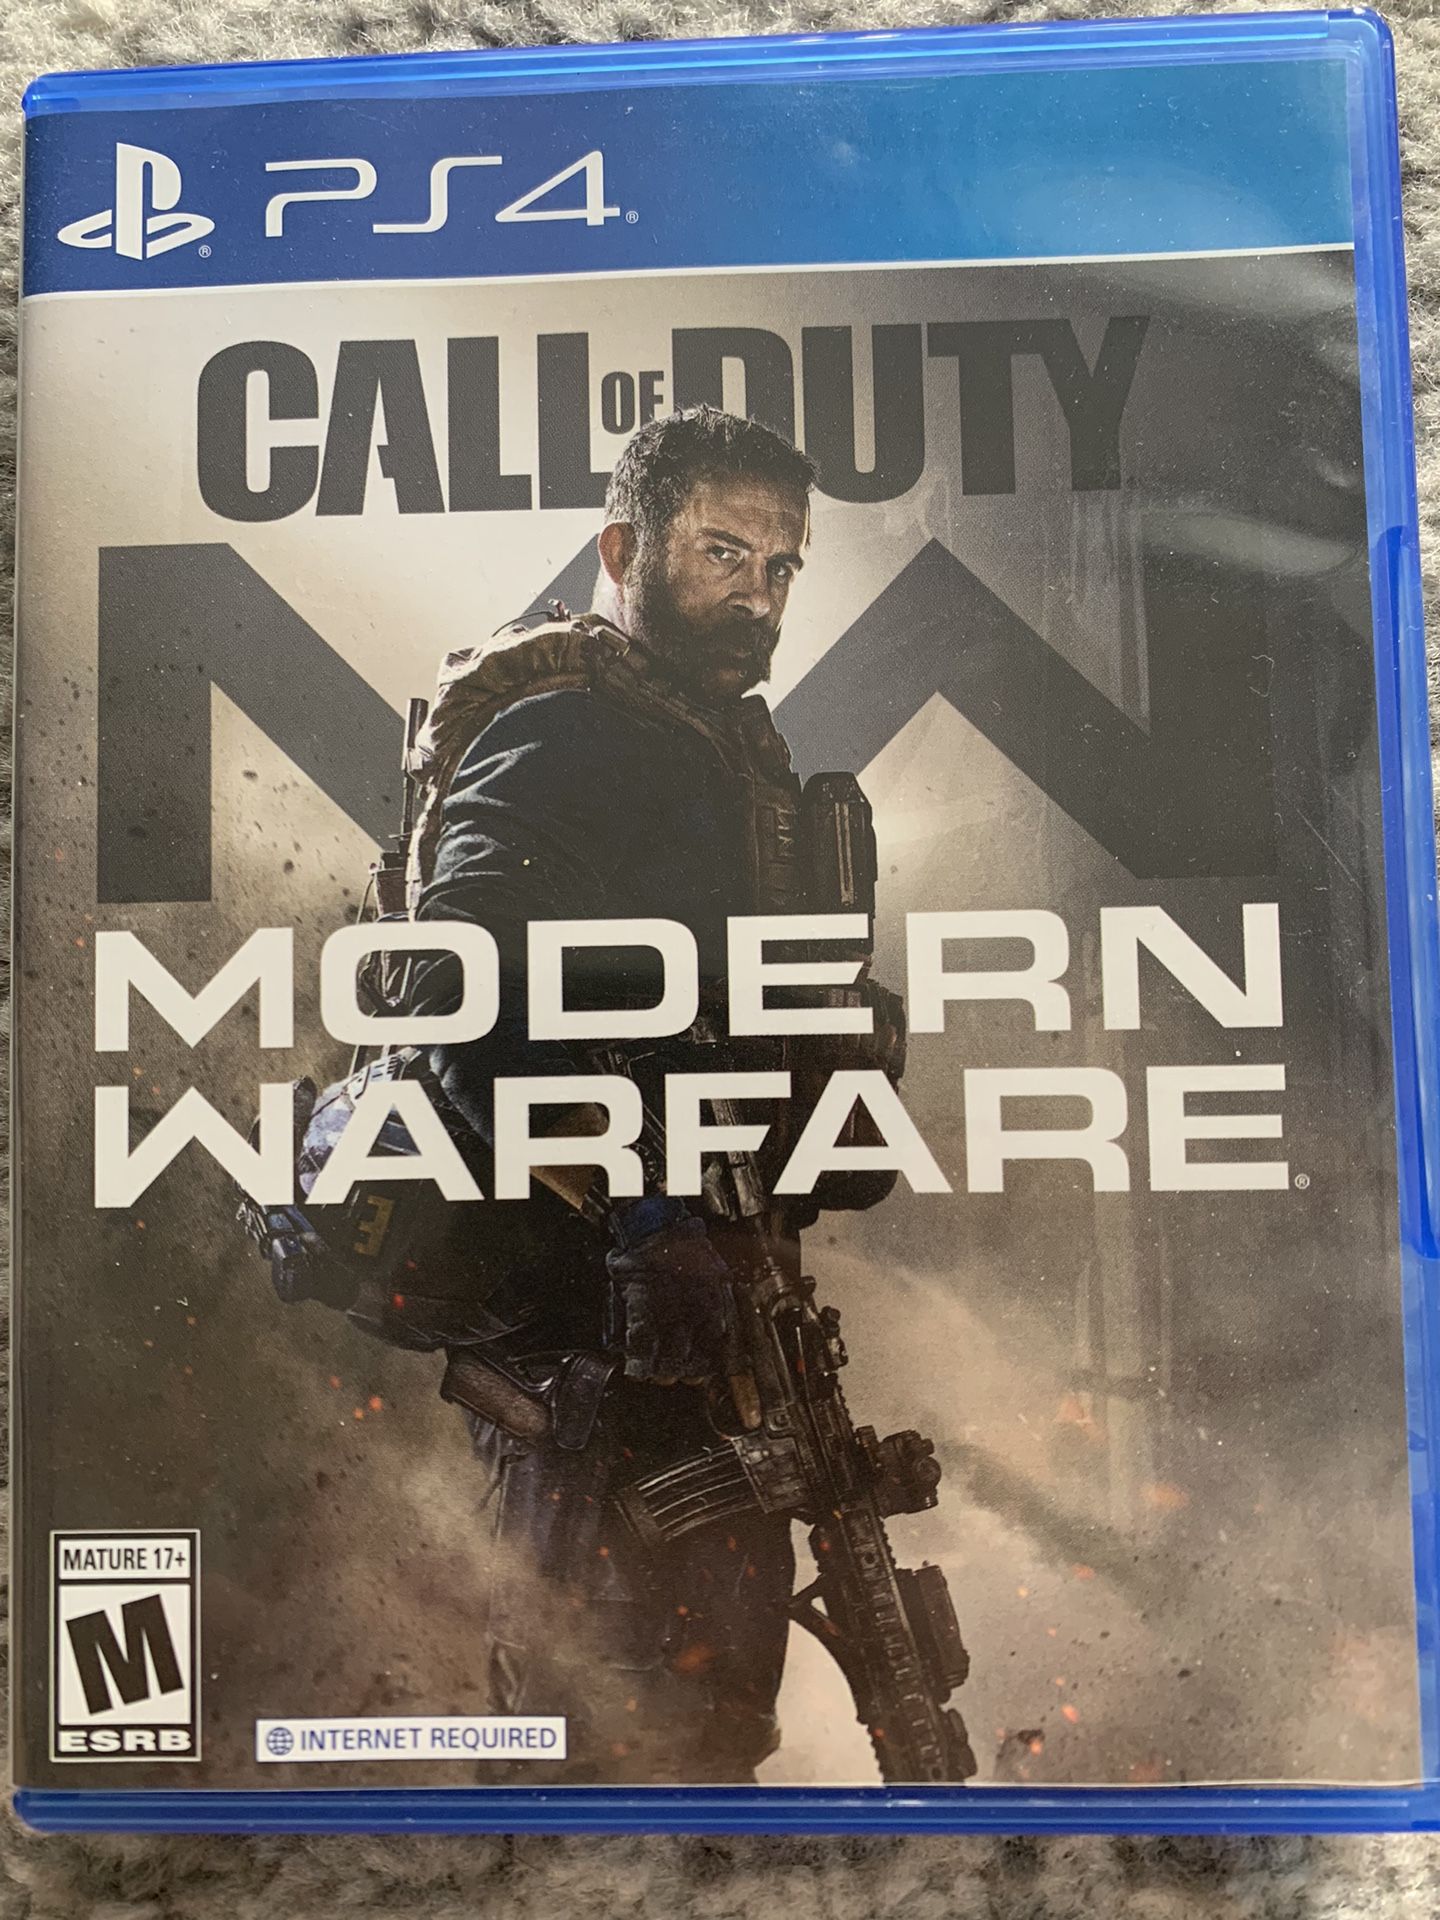 PS4: Call of Duty - Modern Warfare